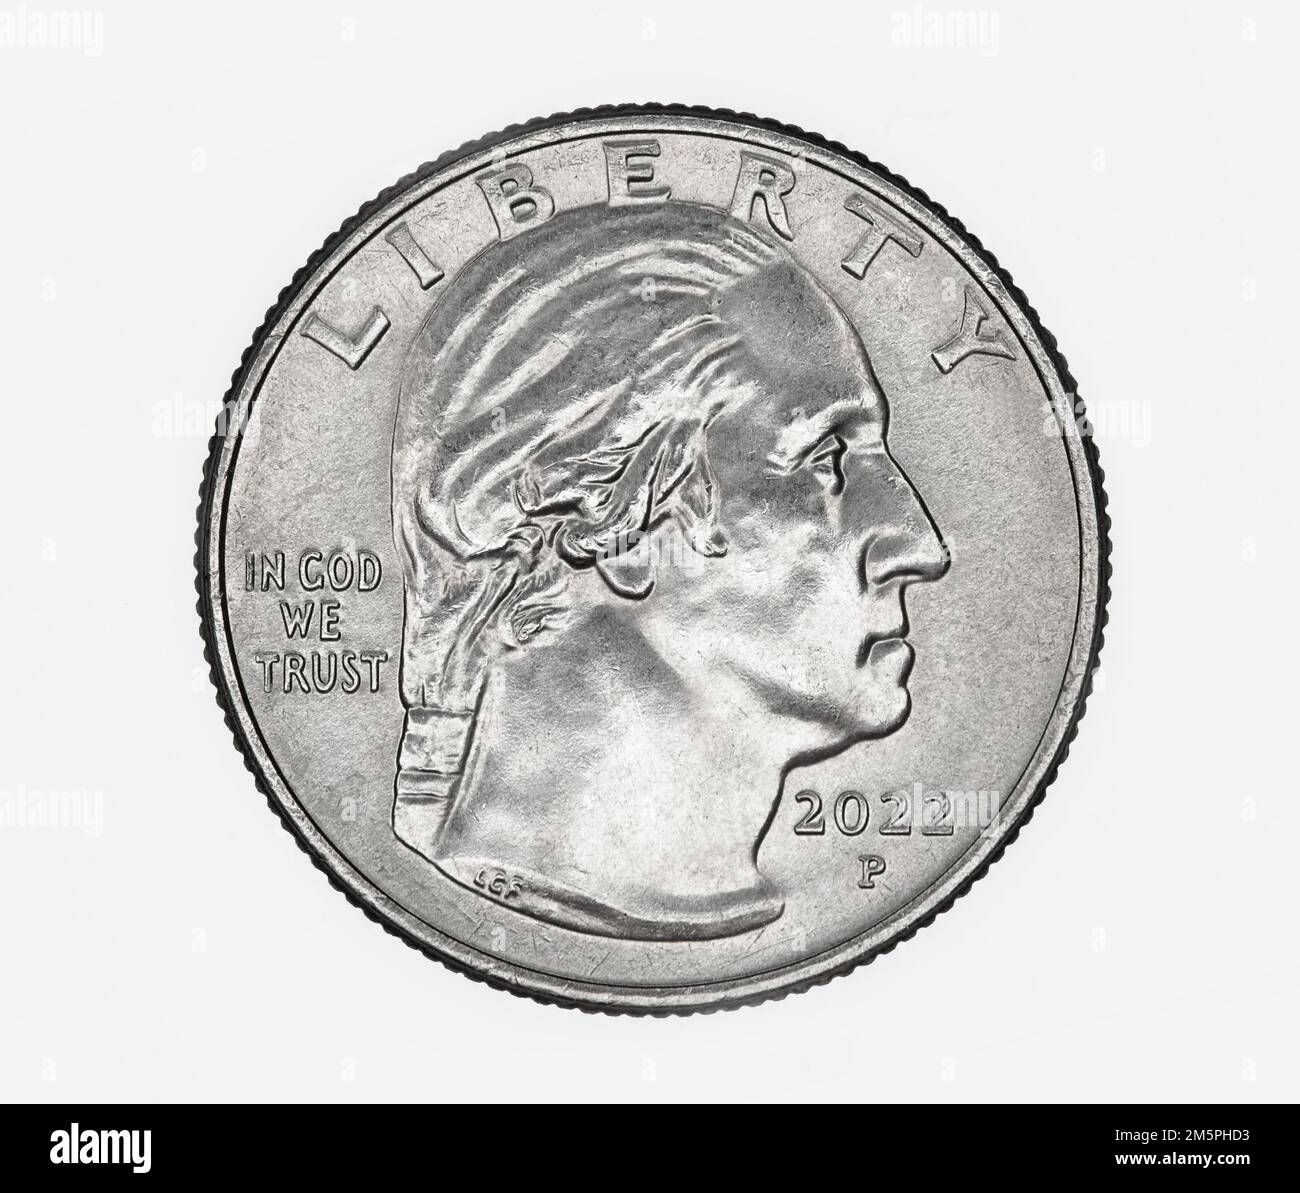 Aktualisiertes Porträt von George Washington auf einer 2022-Dollar-Münze der Vereinigten Staaten Stockfoto